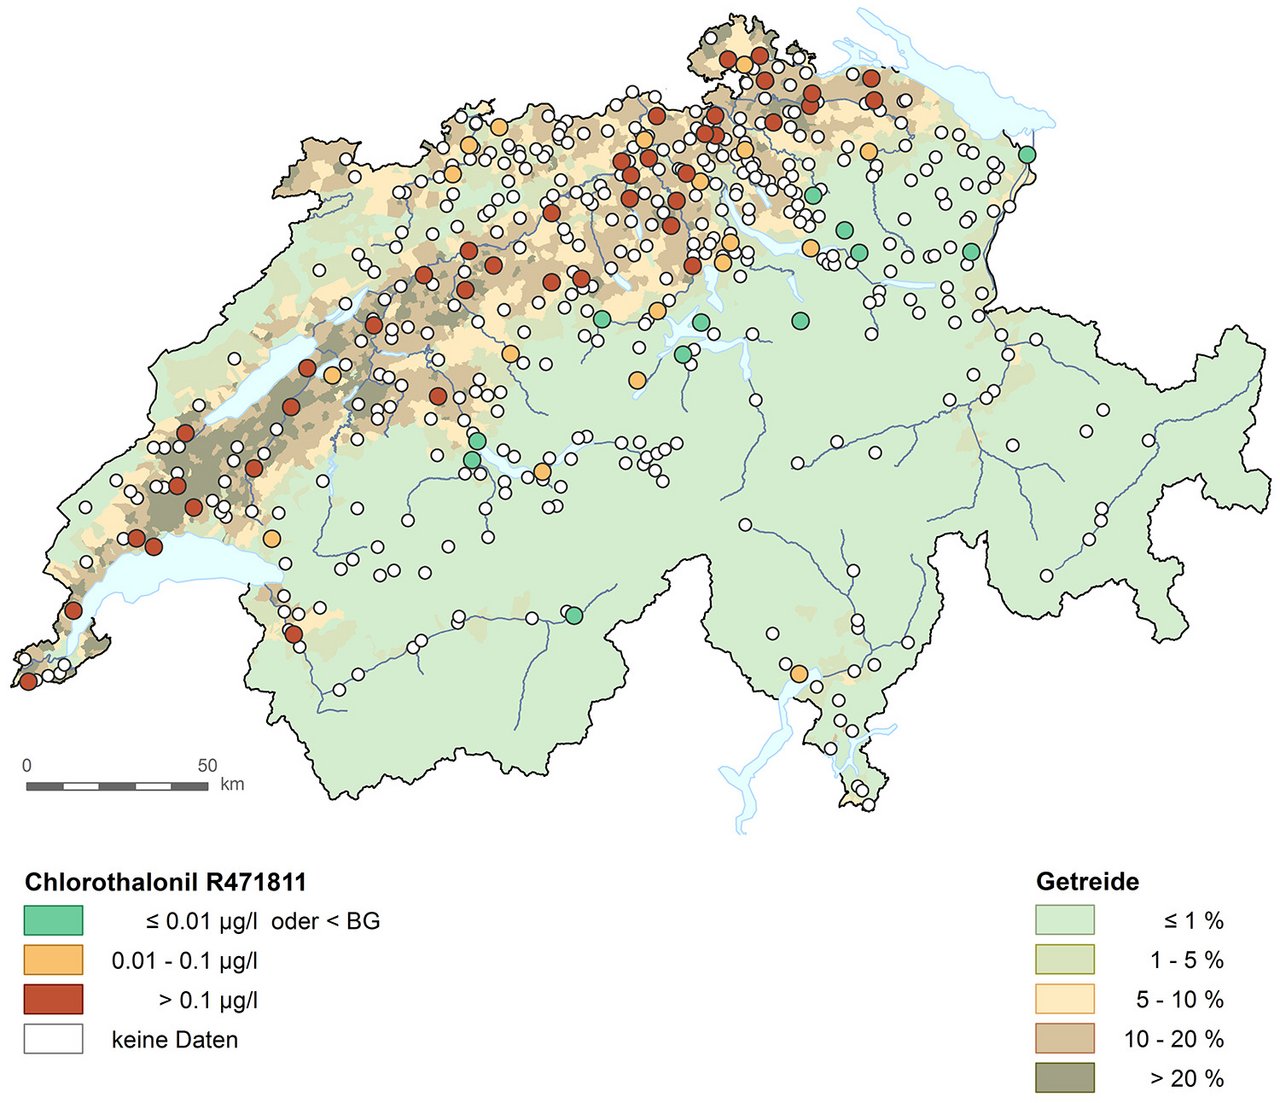 Maximalwert pro NAQUA-Messstelle. BG: Analytische Bestimmungsgrenze. Die Karte zeigt auf Grundlage der Ergebnisse von 70 Messstellen (Pilotstudie 2017/2018) eine weiträumige Verbreitung und einen hohen Anteil von Grenzwertüberschreitungen von Chlorothalonil R471811 im Grundwasser des Mittellandes.